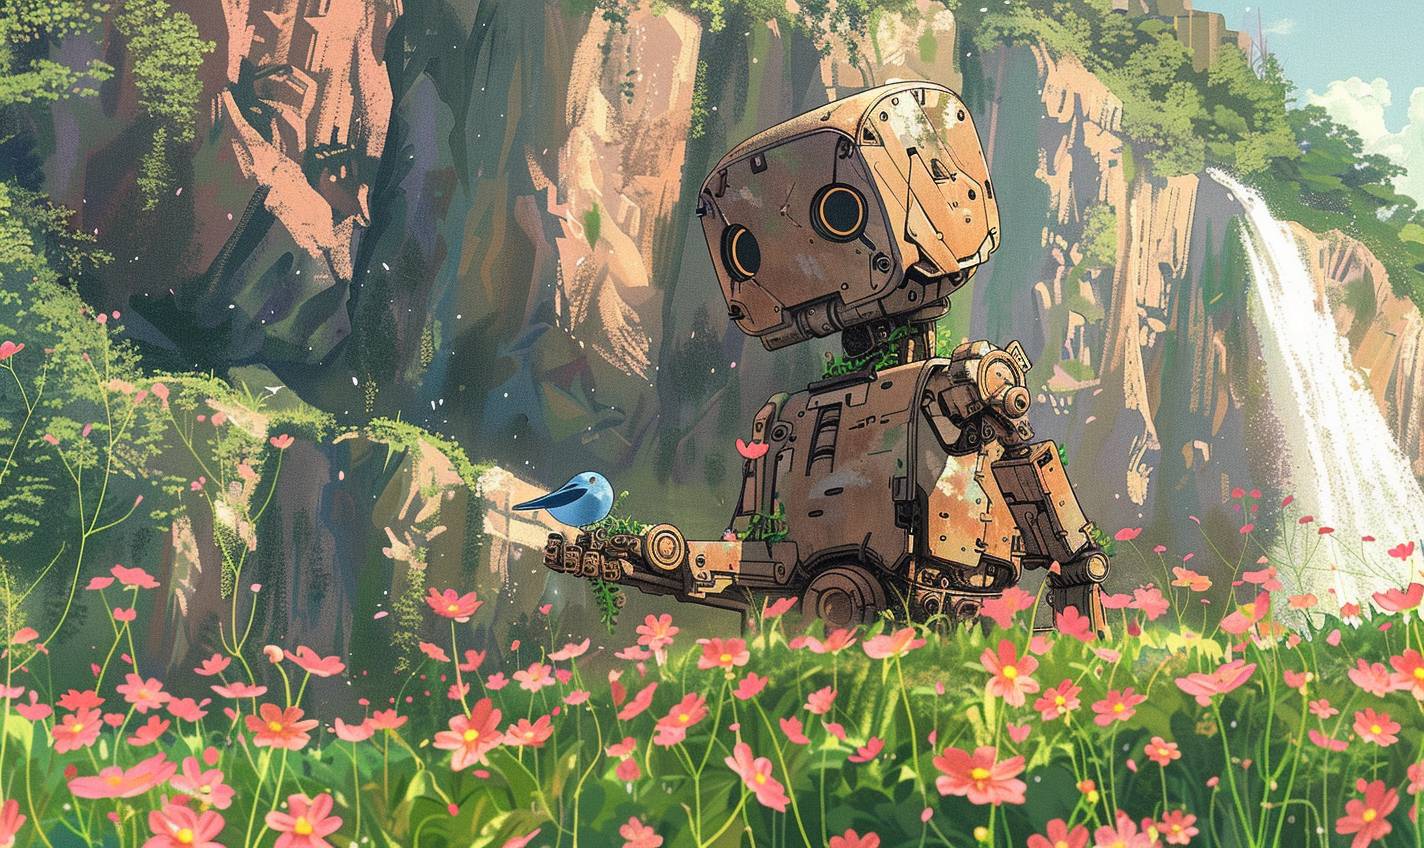 開花したつる草に覆われた風化した木製メカロボットが、高い野花の中で平和に立っており、小さな青い鳥が伸ばした手の上に静かに座っています。温かい色合いと柔らかい線で描かれたデジタルカートゥーン。滝のある大きな崖が背後にそびえ立っています。